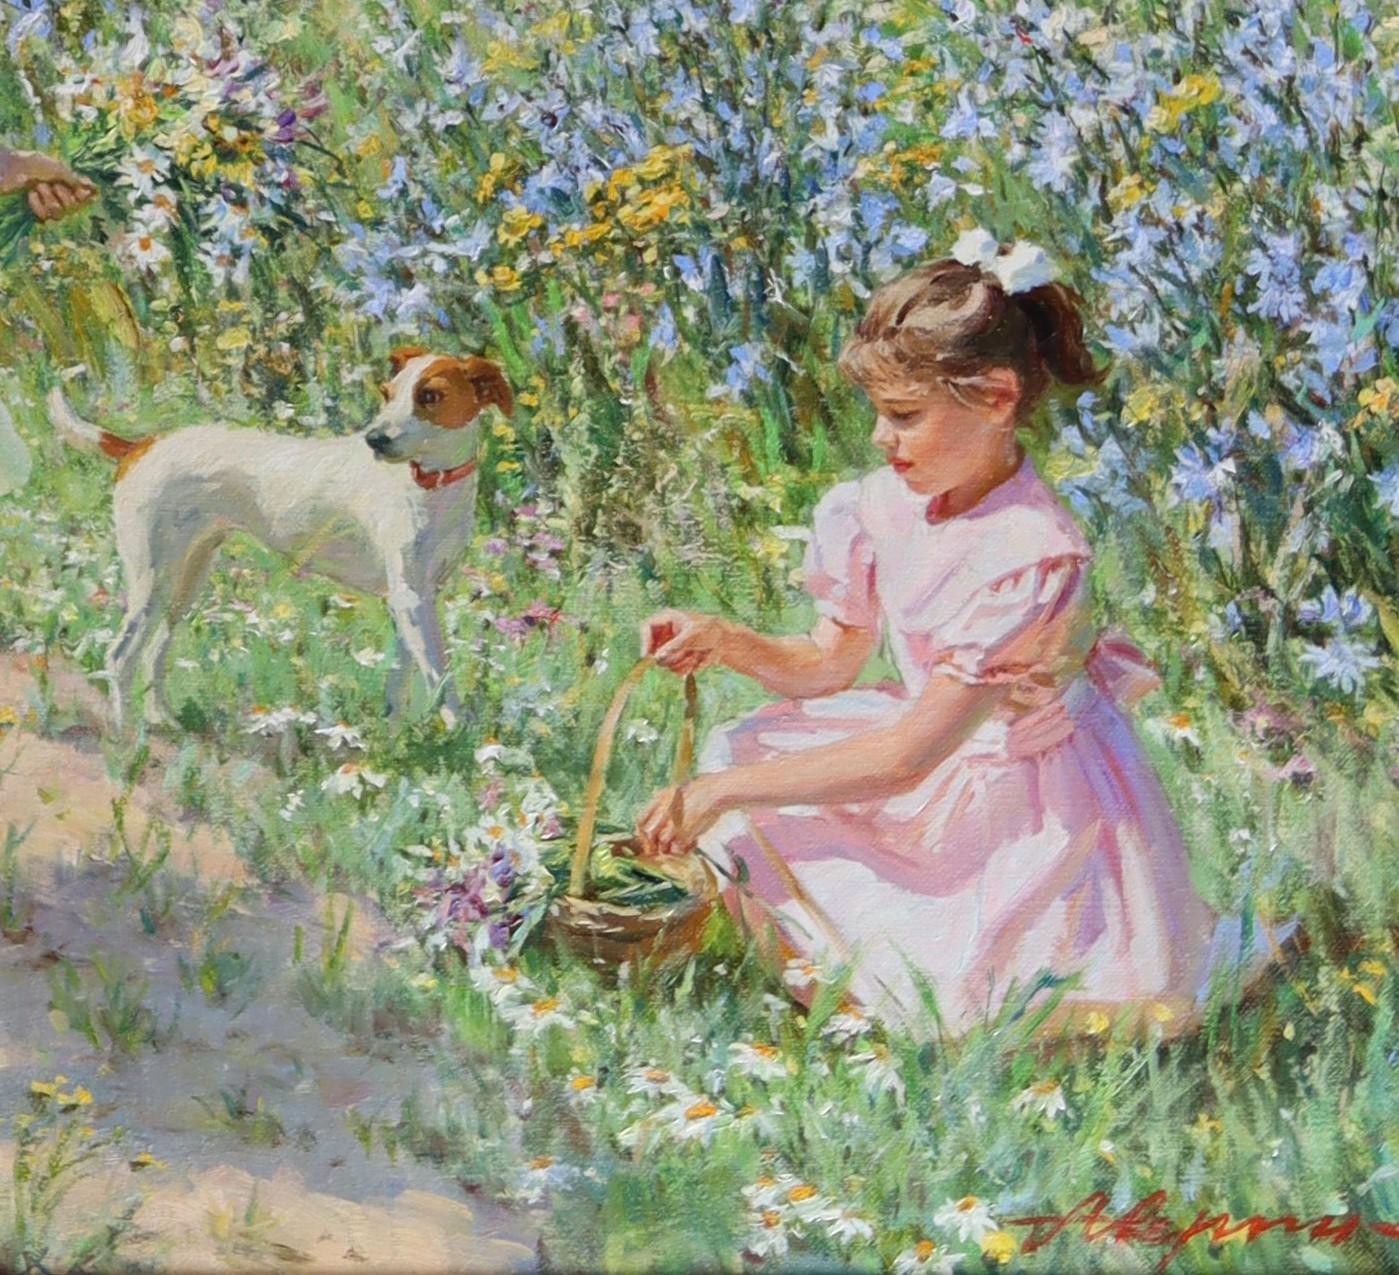 Jeunes filles jouant dans une moisson de fleurs sauvages avec un Jack Russell - Impressionnisme Painting par Alexander Averin